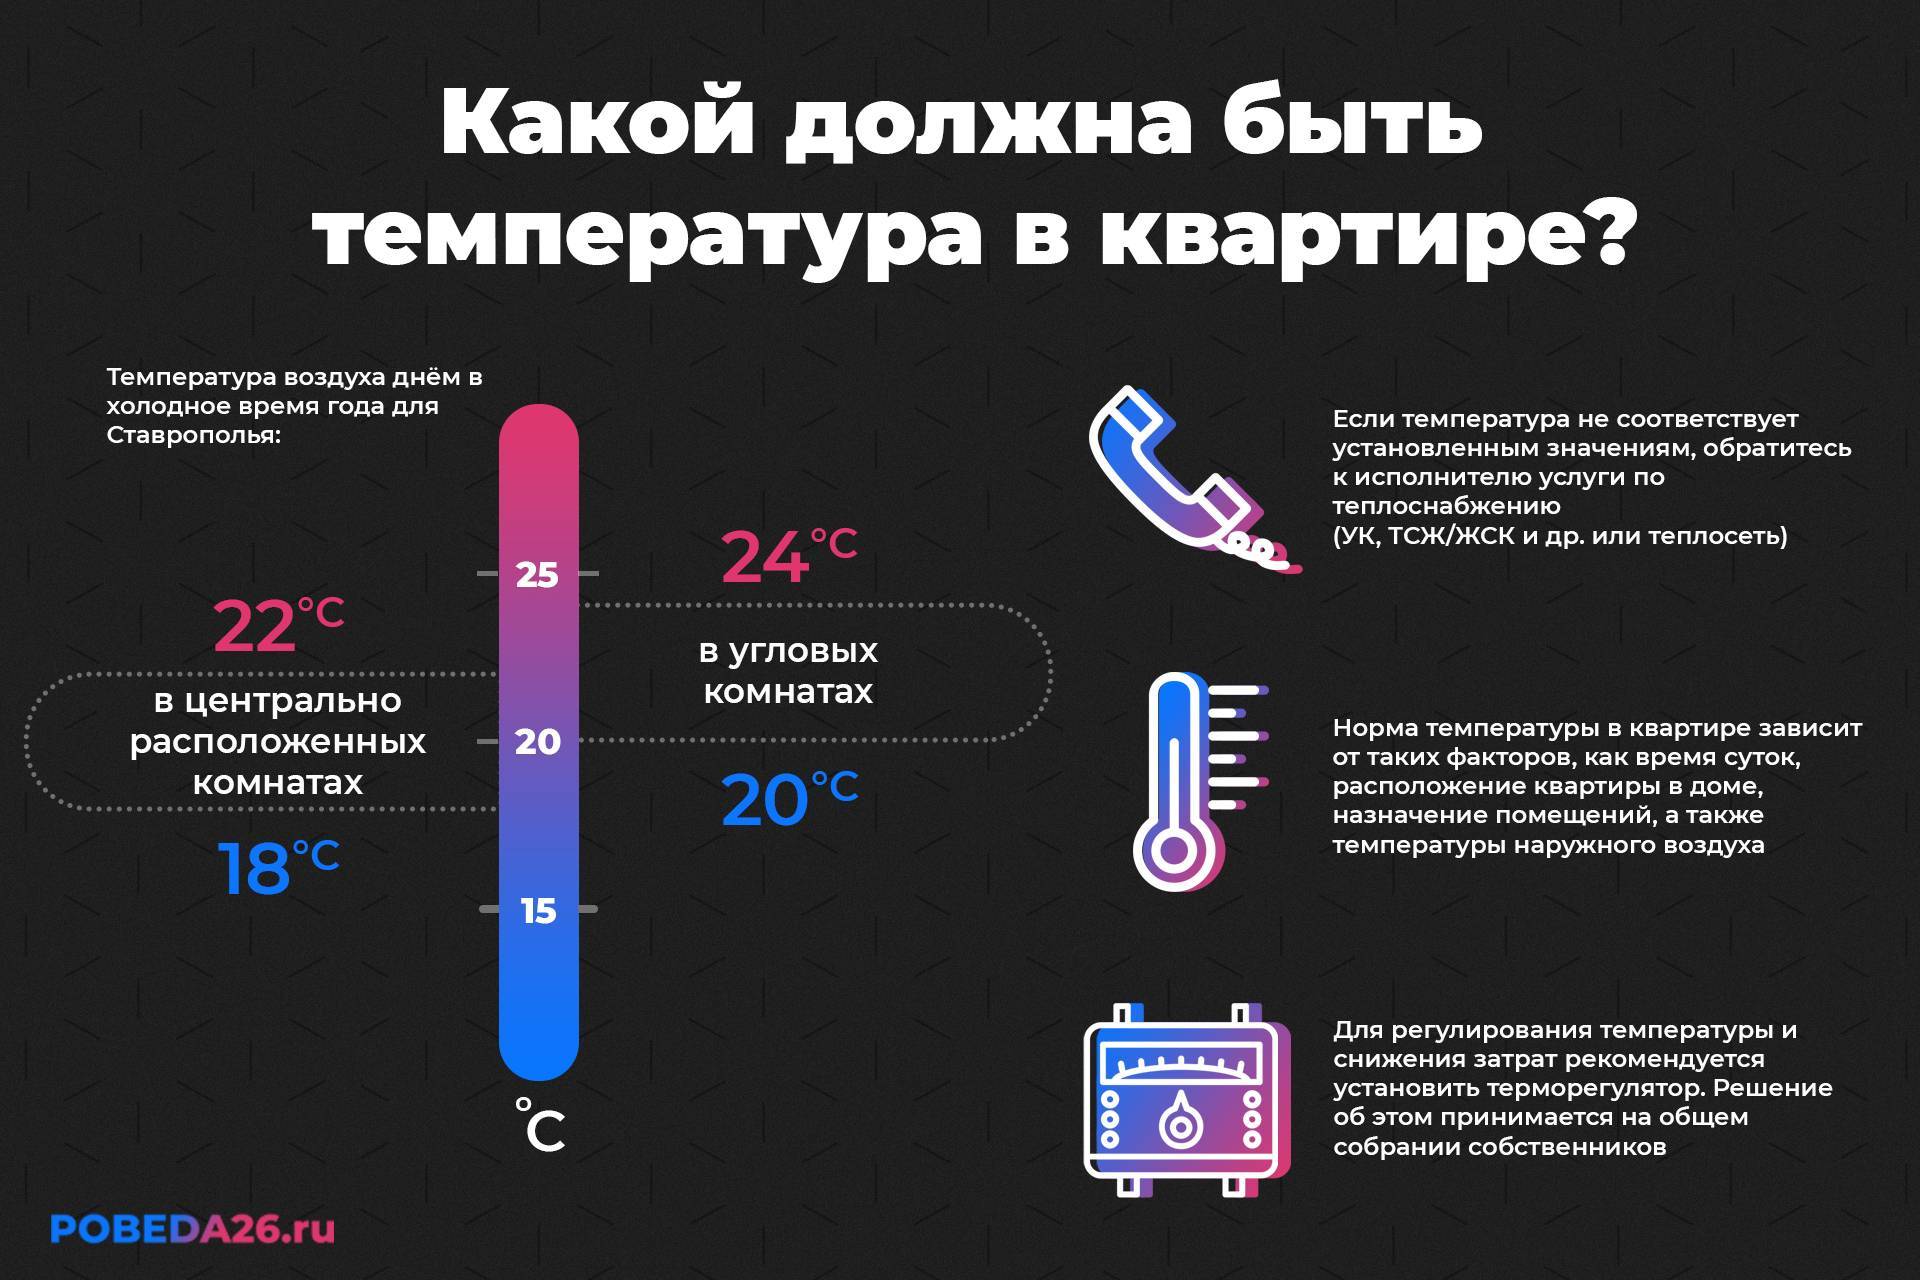 Нормы температуры в квартире